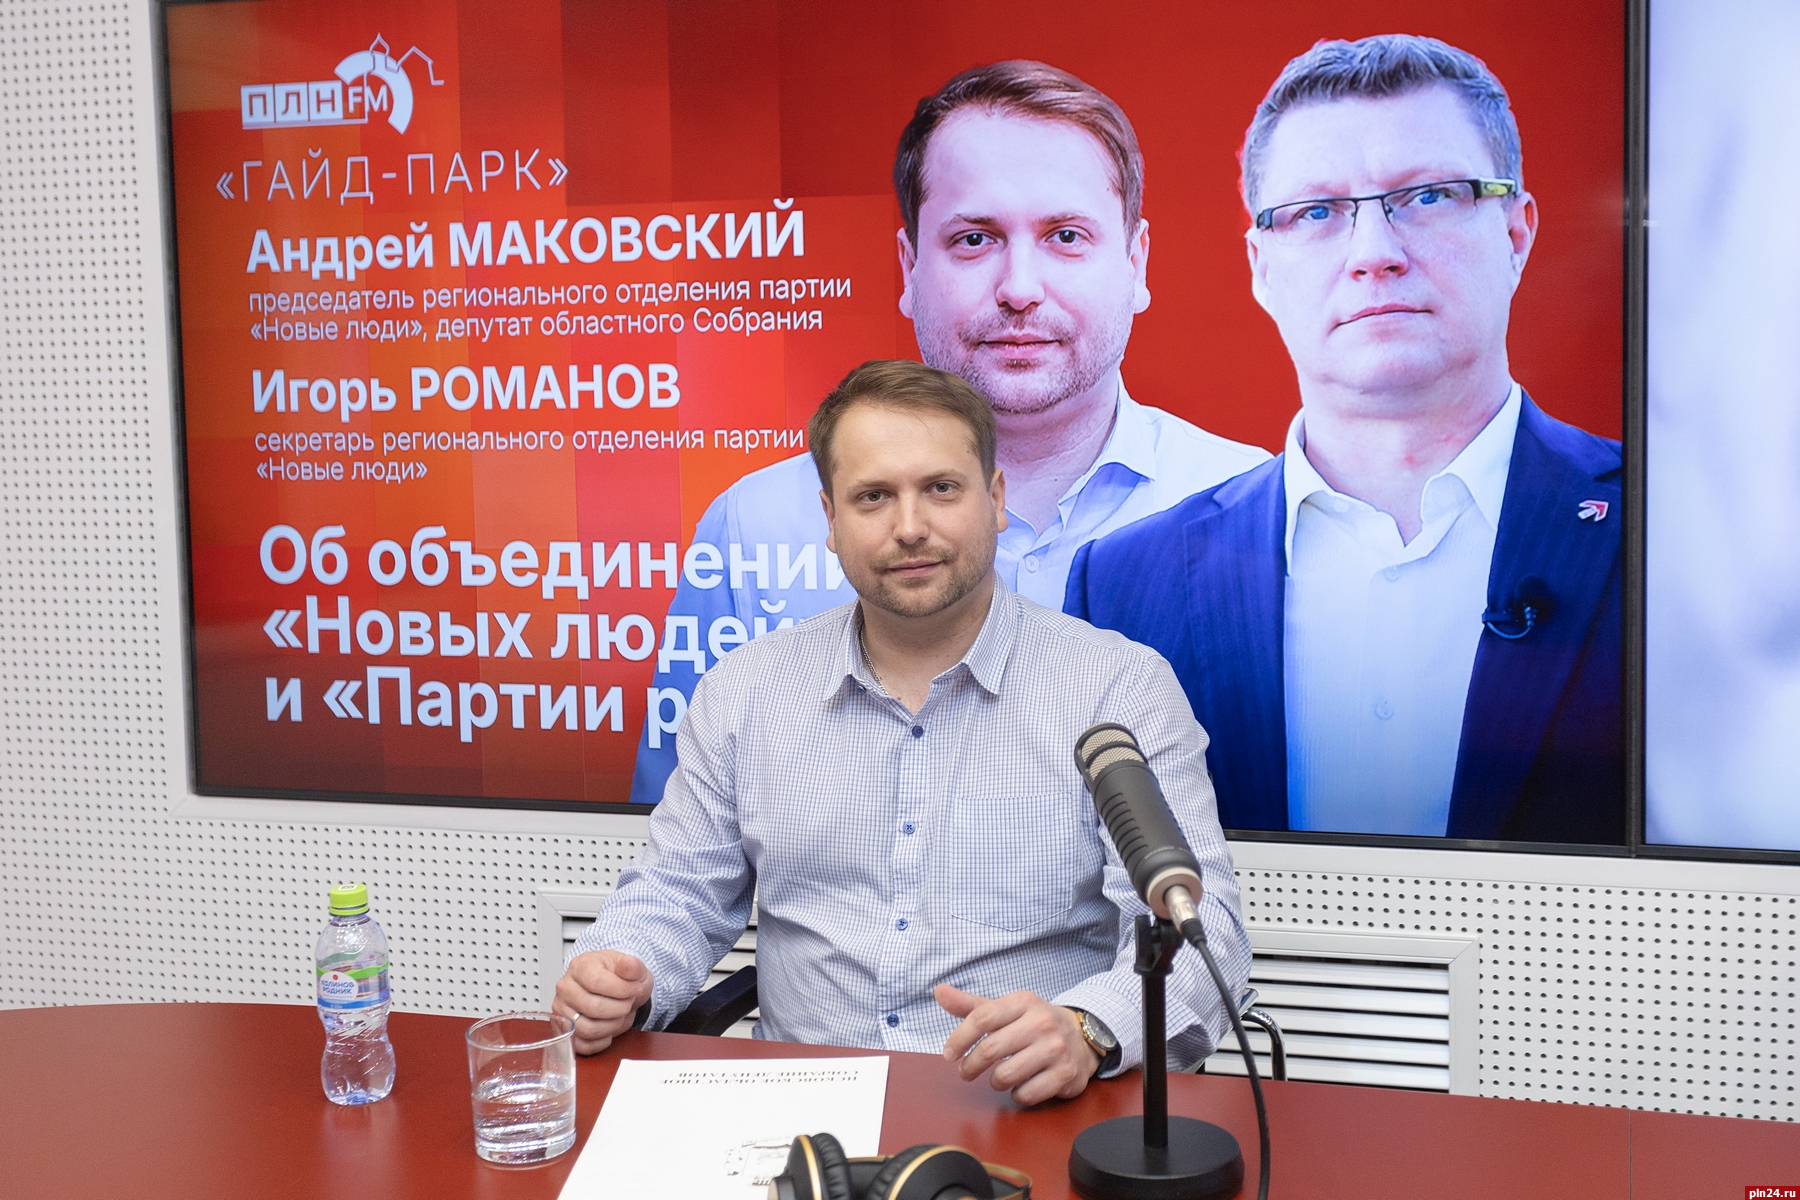 Андрей Маковский: Если до выборов Игорь Романов ярко себя проявит, я готов уступить ему первое место в списке в облсобрание